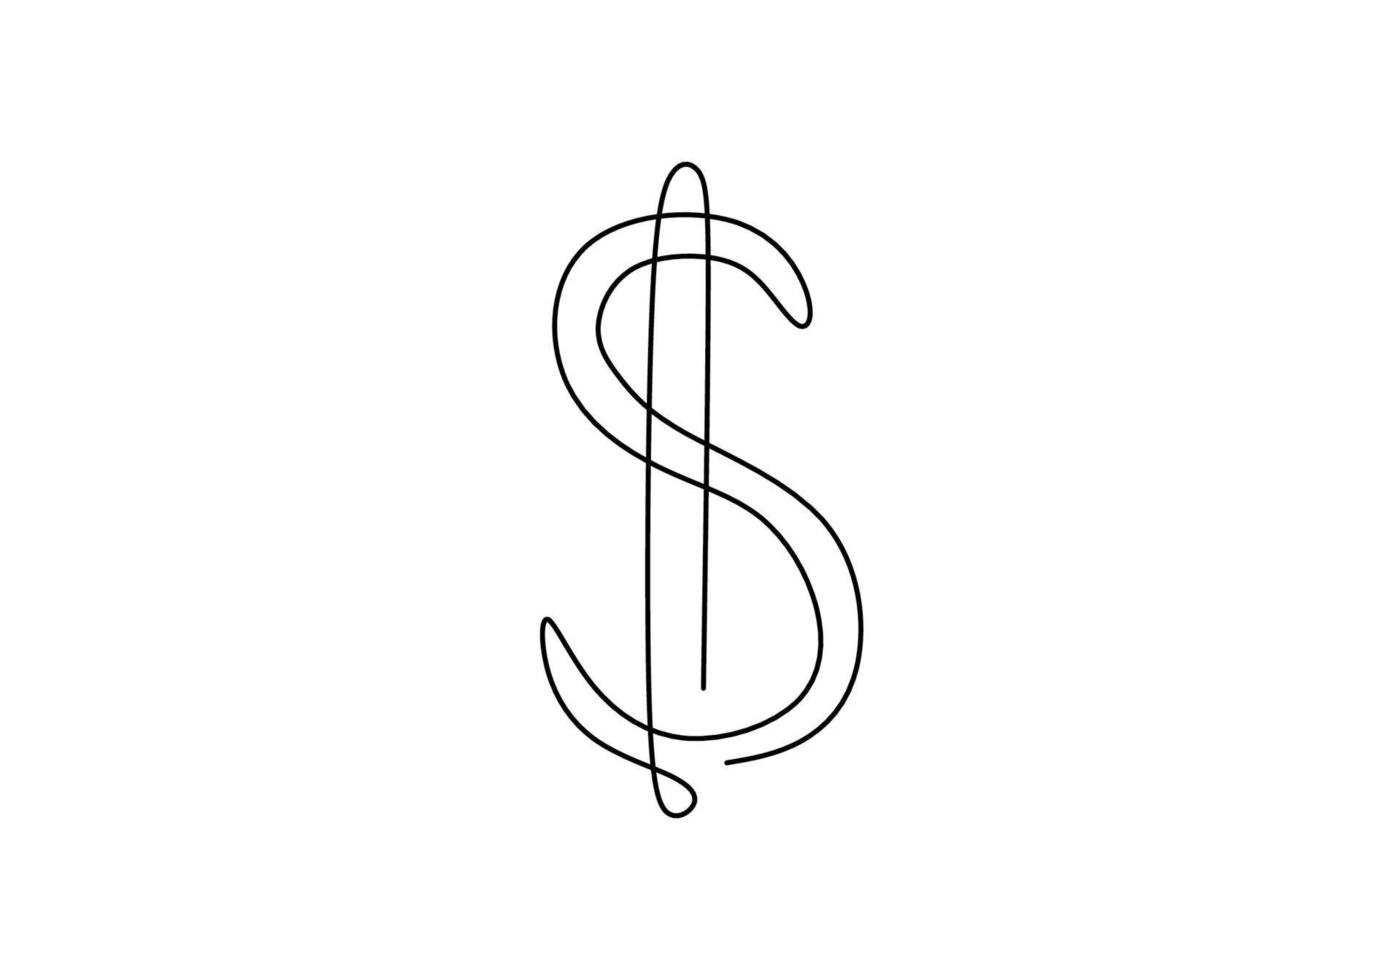 dibujo continuo de una línea del signo de dólar aislado sobre fondo blanco. símbolo de dinero dólar con garabatos dibujados a mano dibujo lineal. diseño minimalista. concepto de almacenamiento de dinero, dinero, finanzas vector